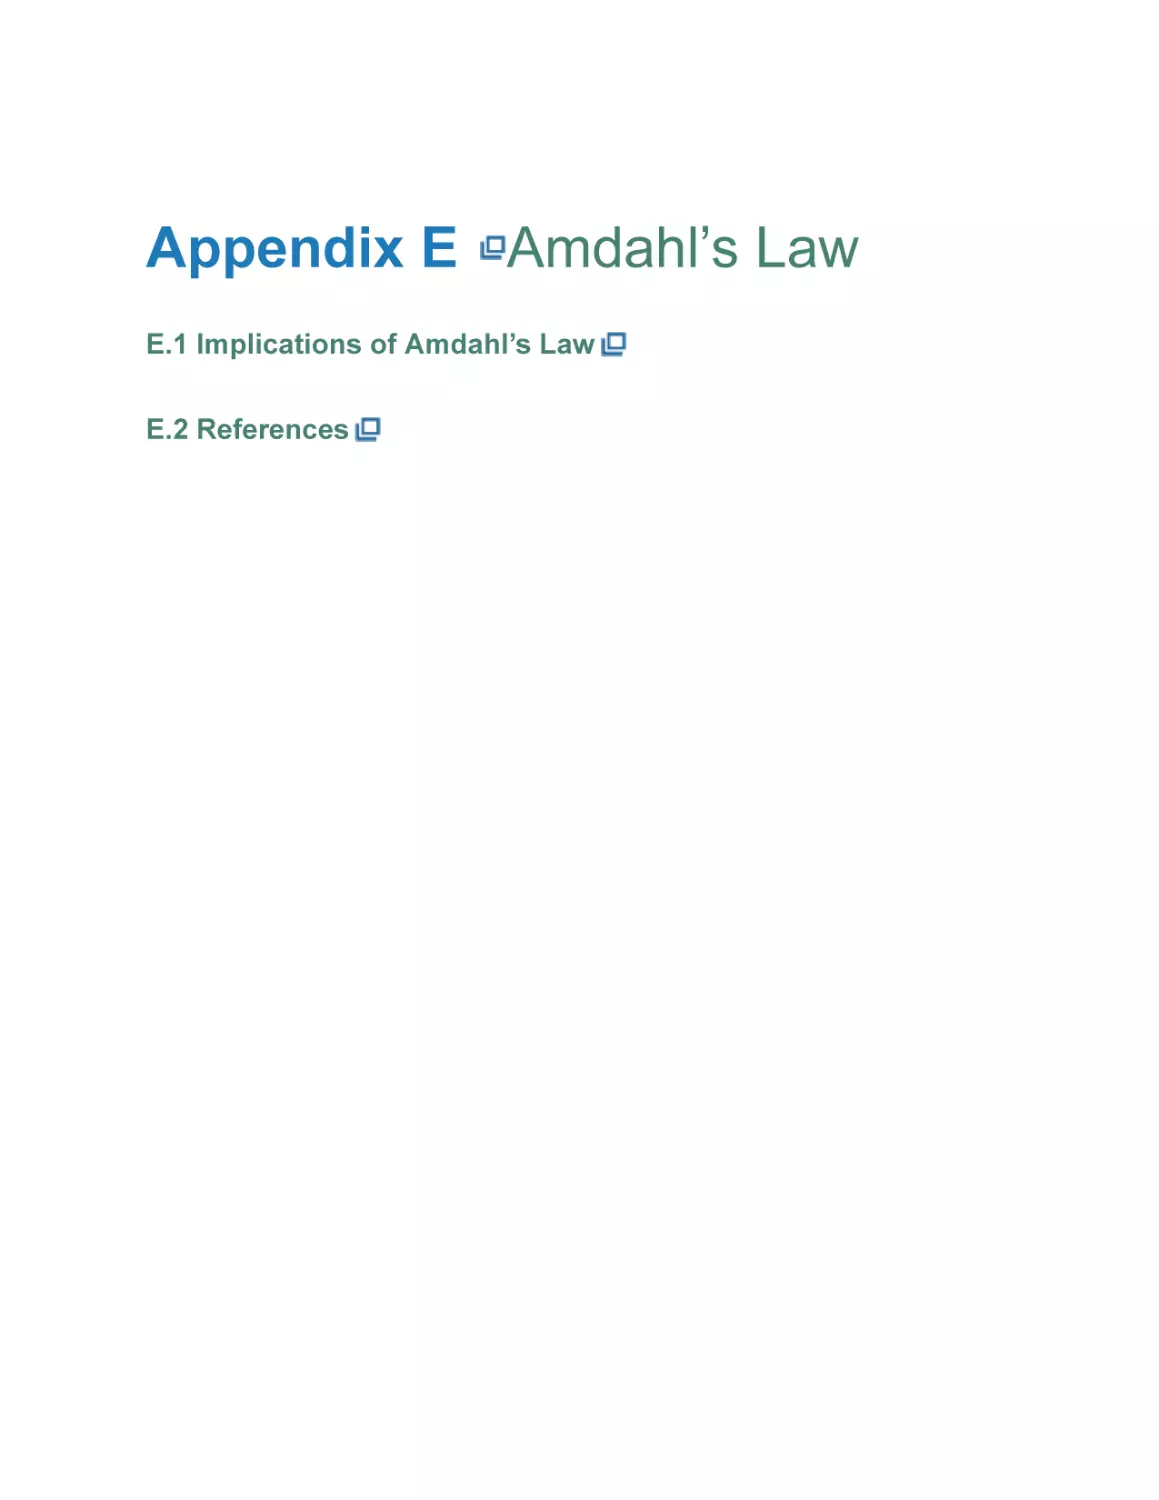 Appendix E Amdahl’s Law